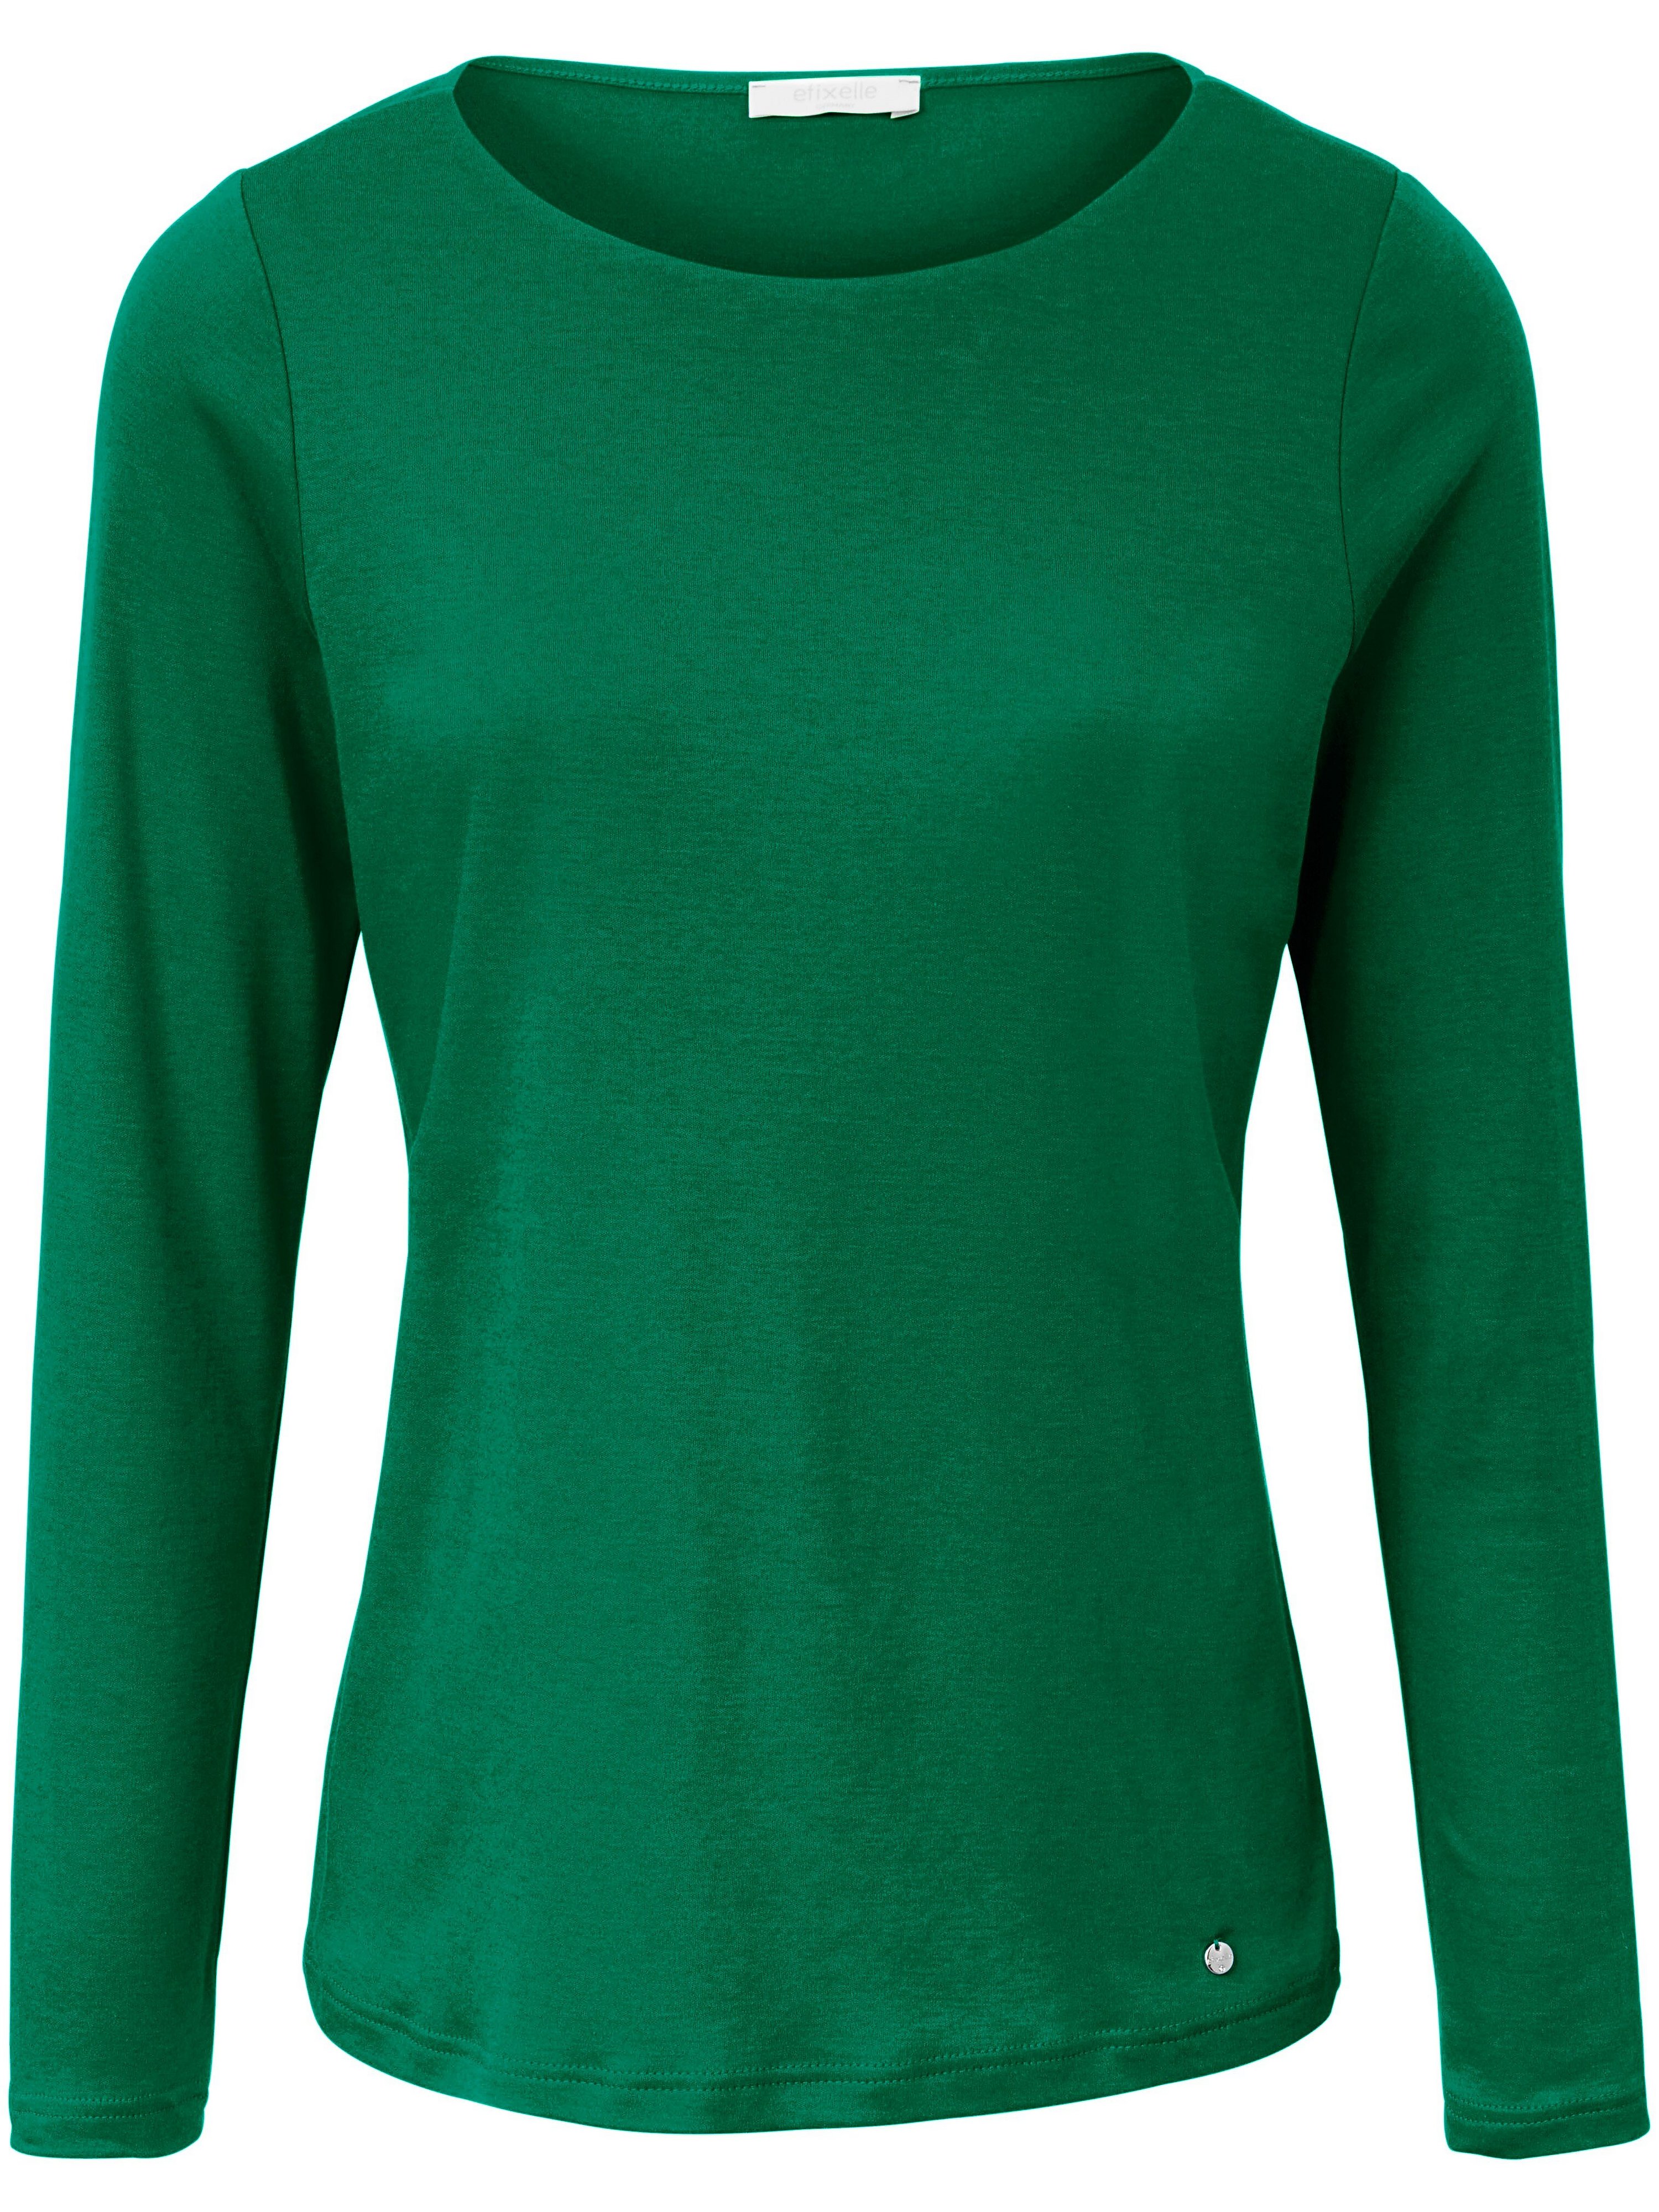 Le T-shirt manches longues 100% coton  Efixelle vert taille 42